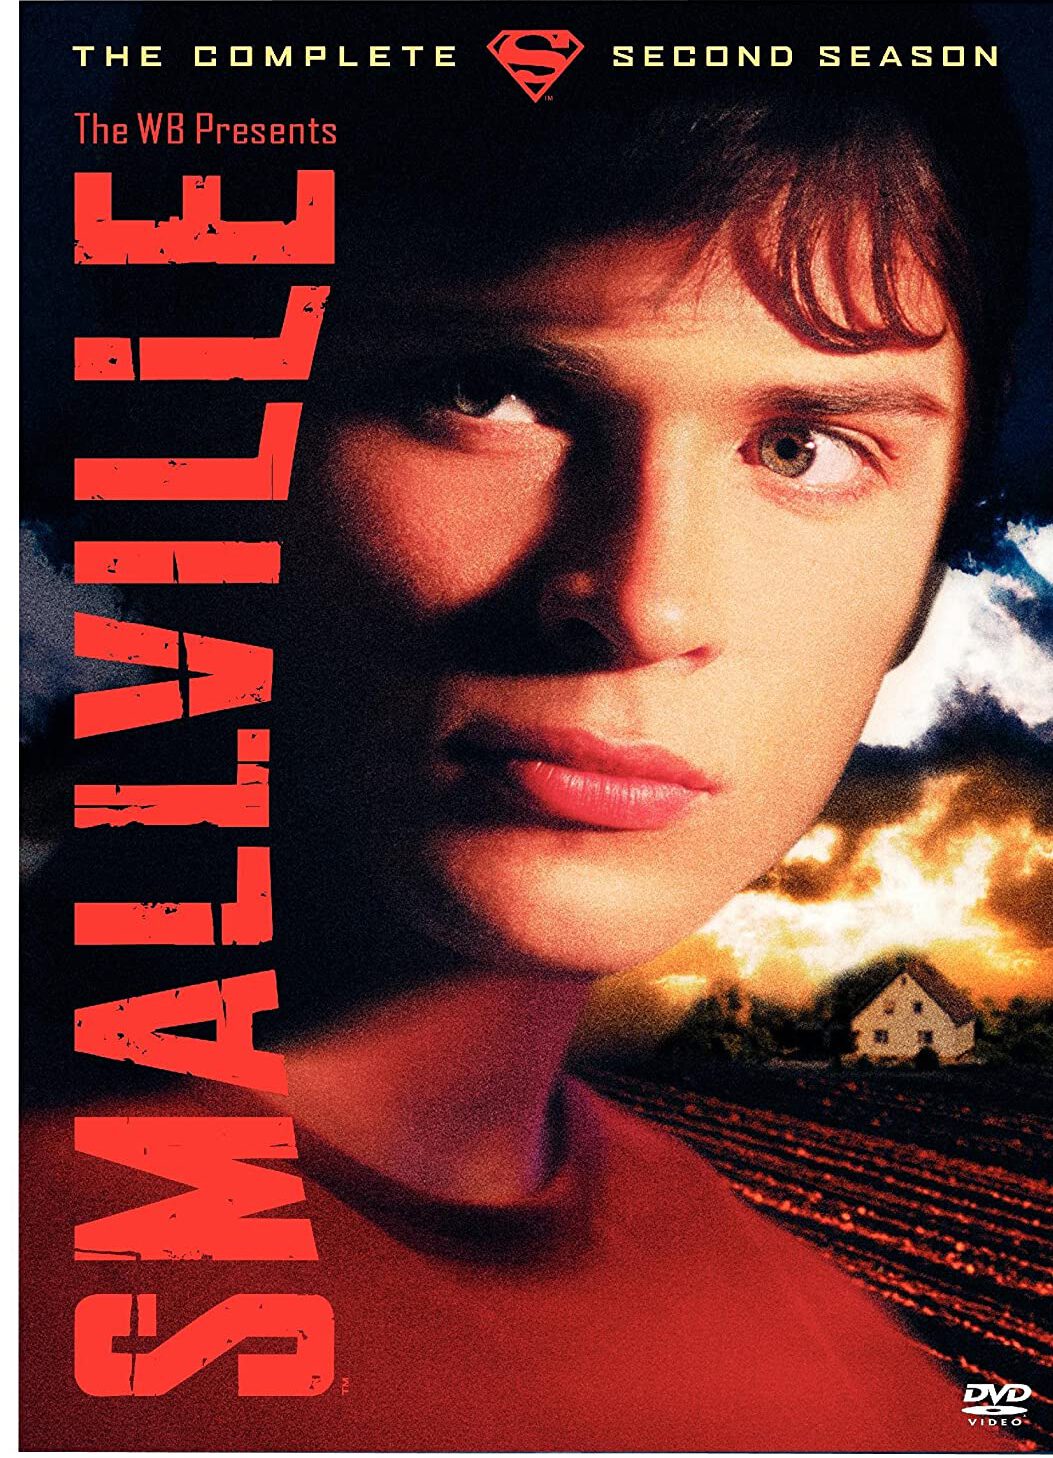 ดูหนังออนไลน์ Smallville สมอลวิลล์ หนุ่มน้อยซุปเปอร์แมน ปี 2 ตอนที่ 19